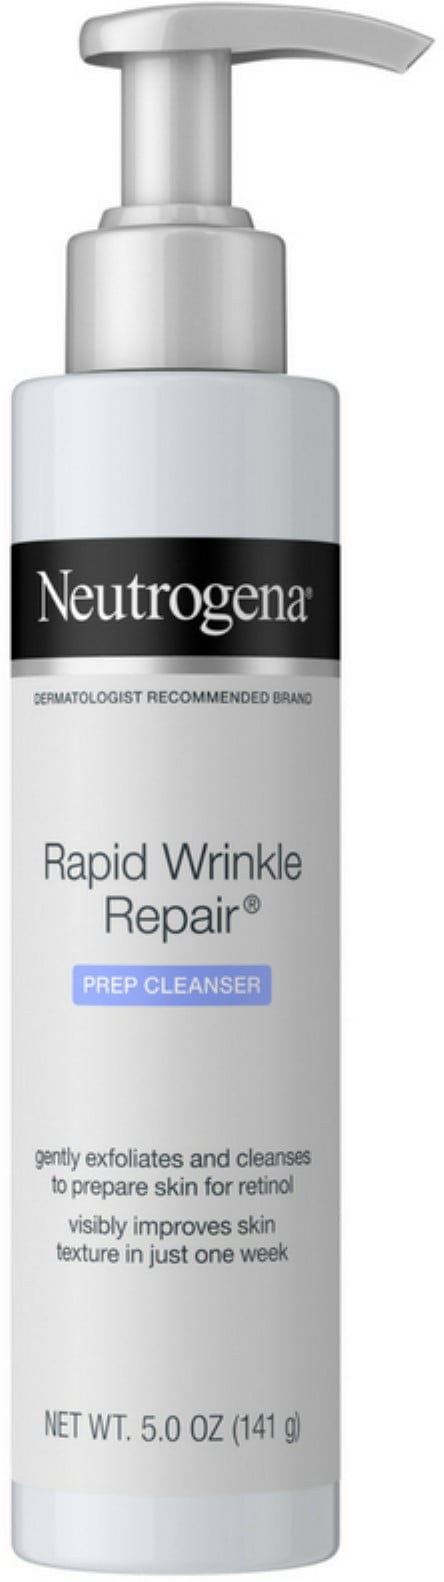 neutrogena anti aging face wash